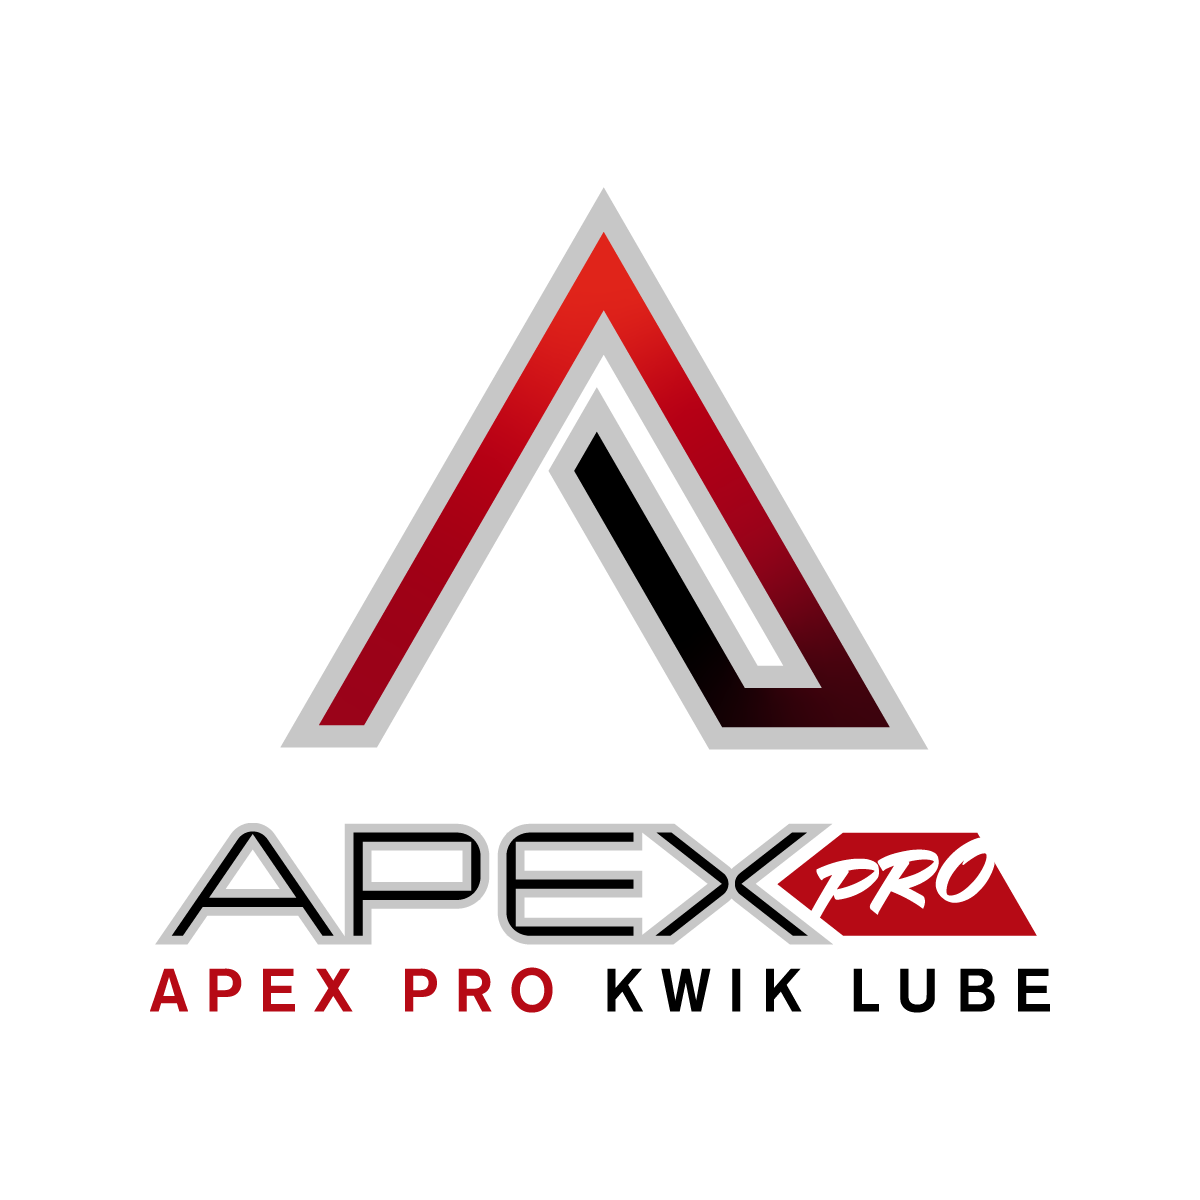 APEX PRO KWICK LUBE & APEX PRO AUTO CARE